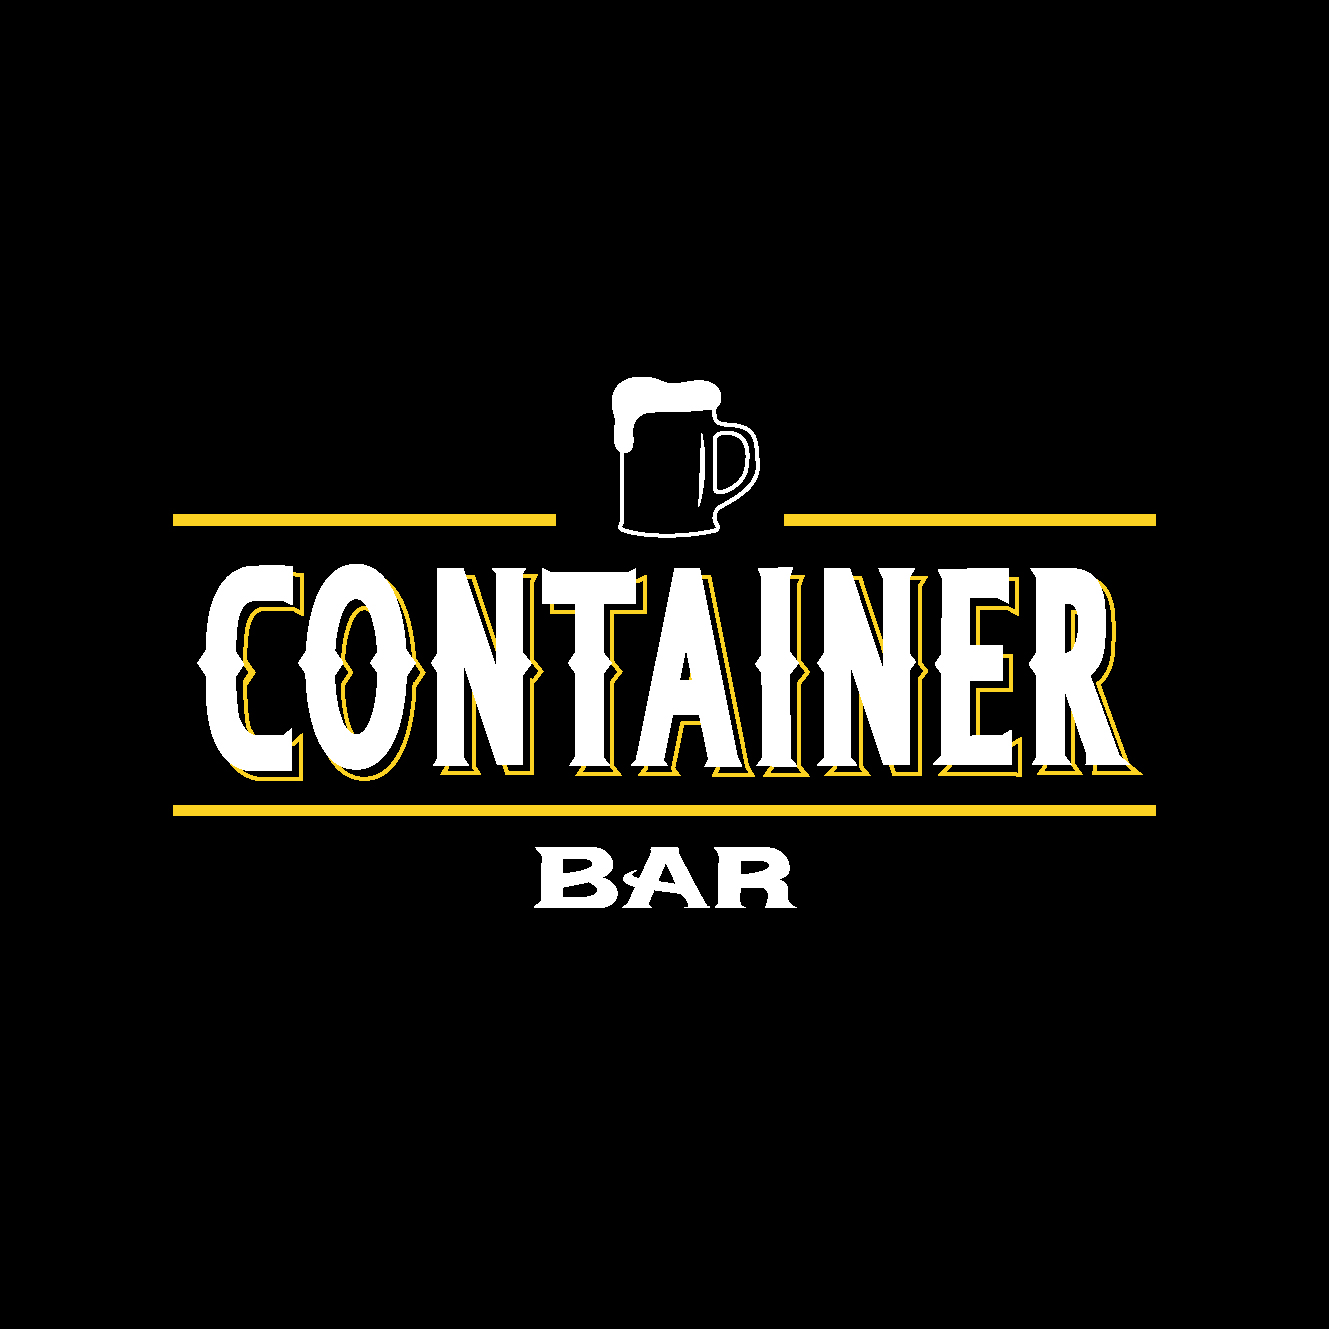 Carta de bebidas de Container Bar.
¡HACE CLICK EN EL BOTON "VIEW"!